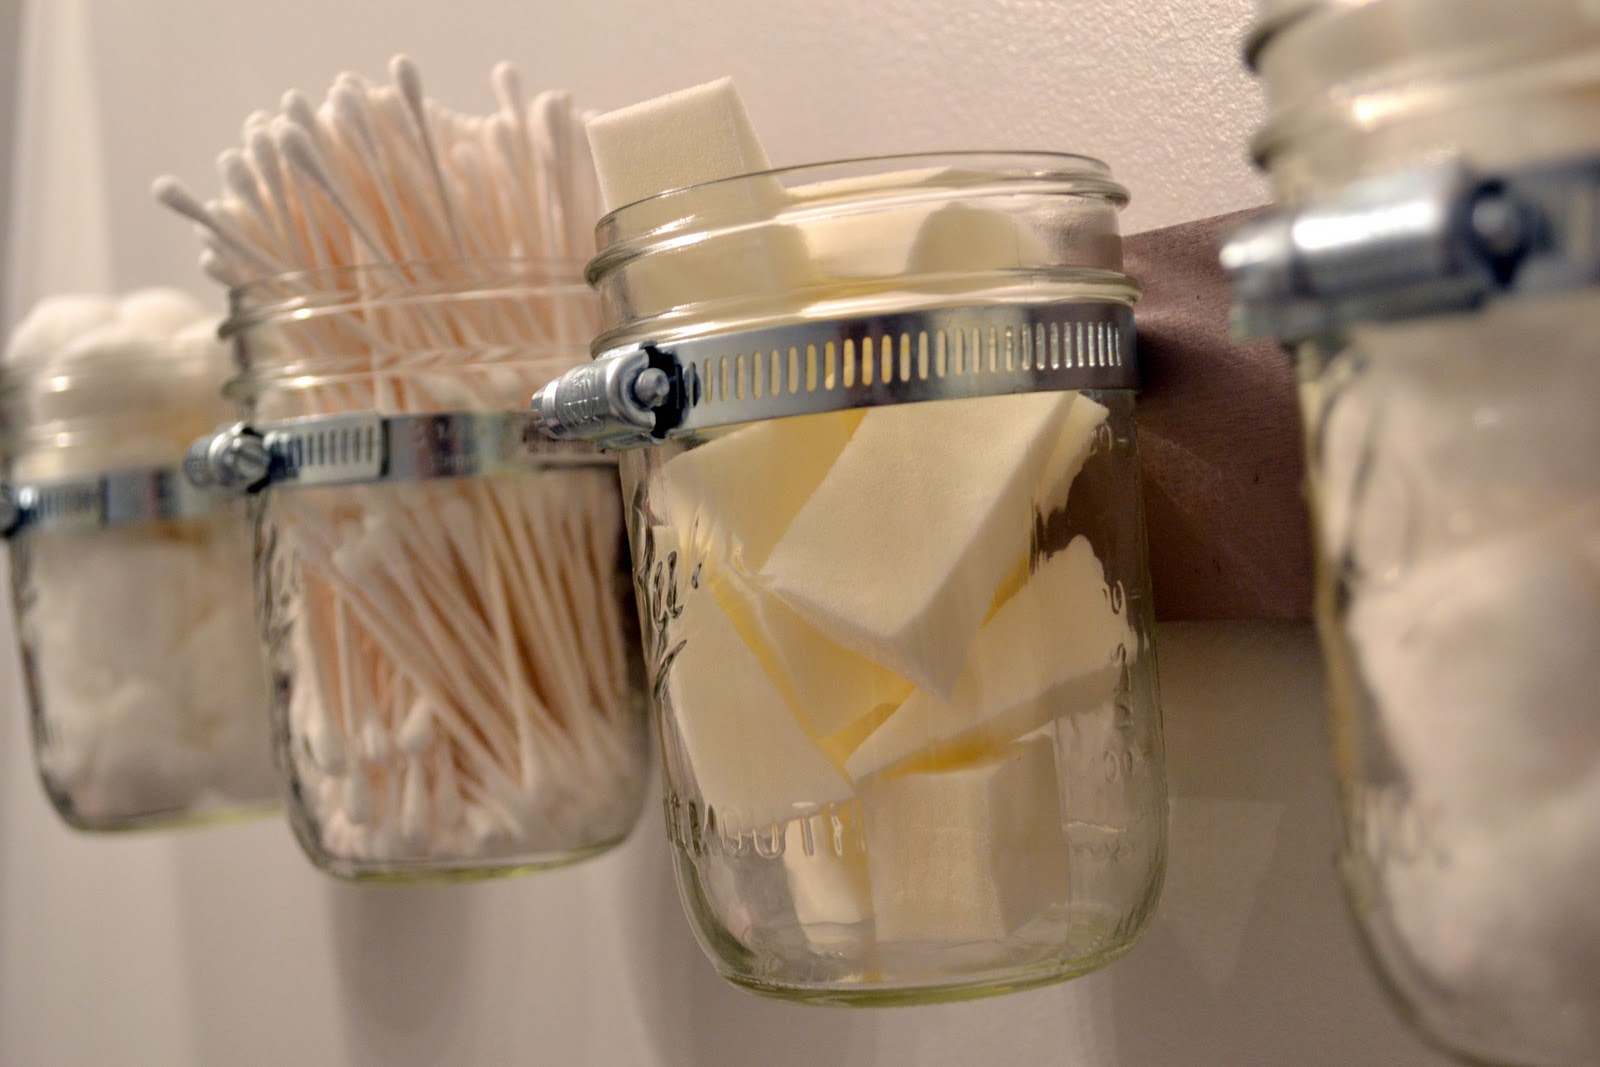 DIY Mason Jar Bathroom Storage - Liz Marie Blog